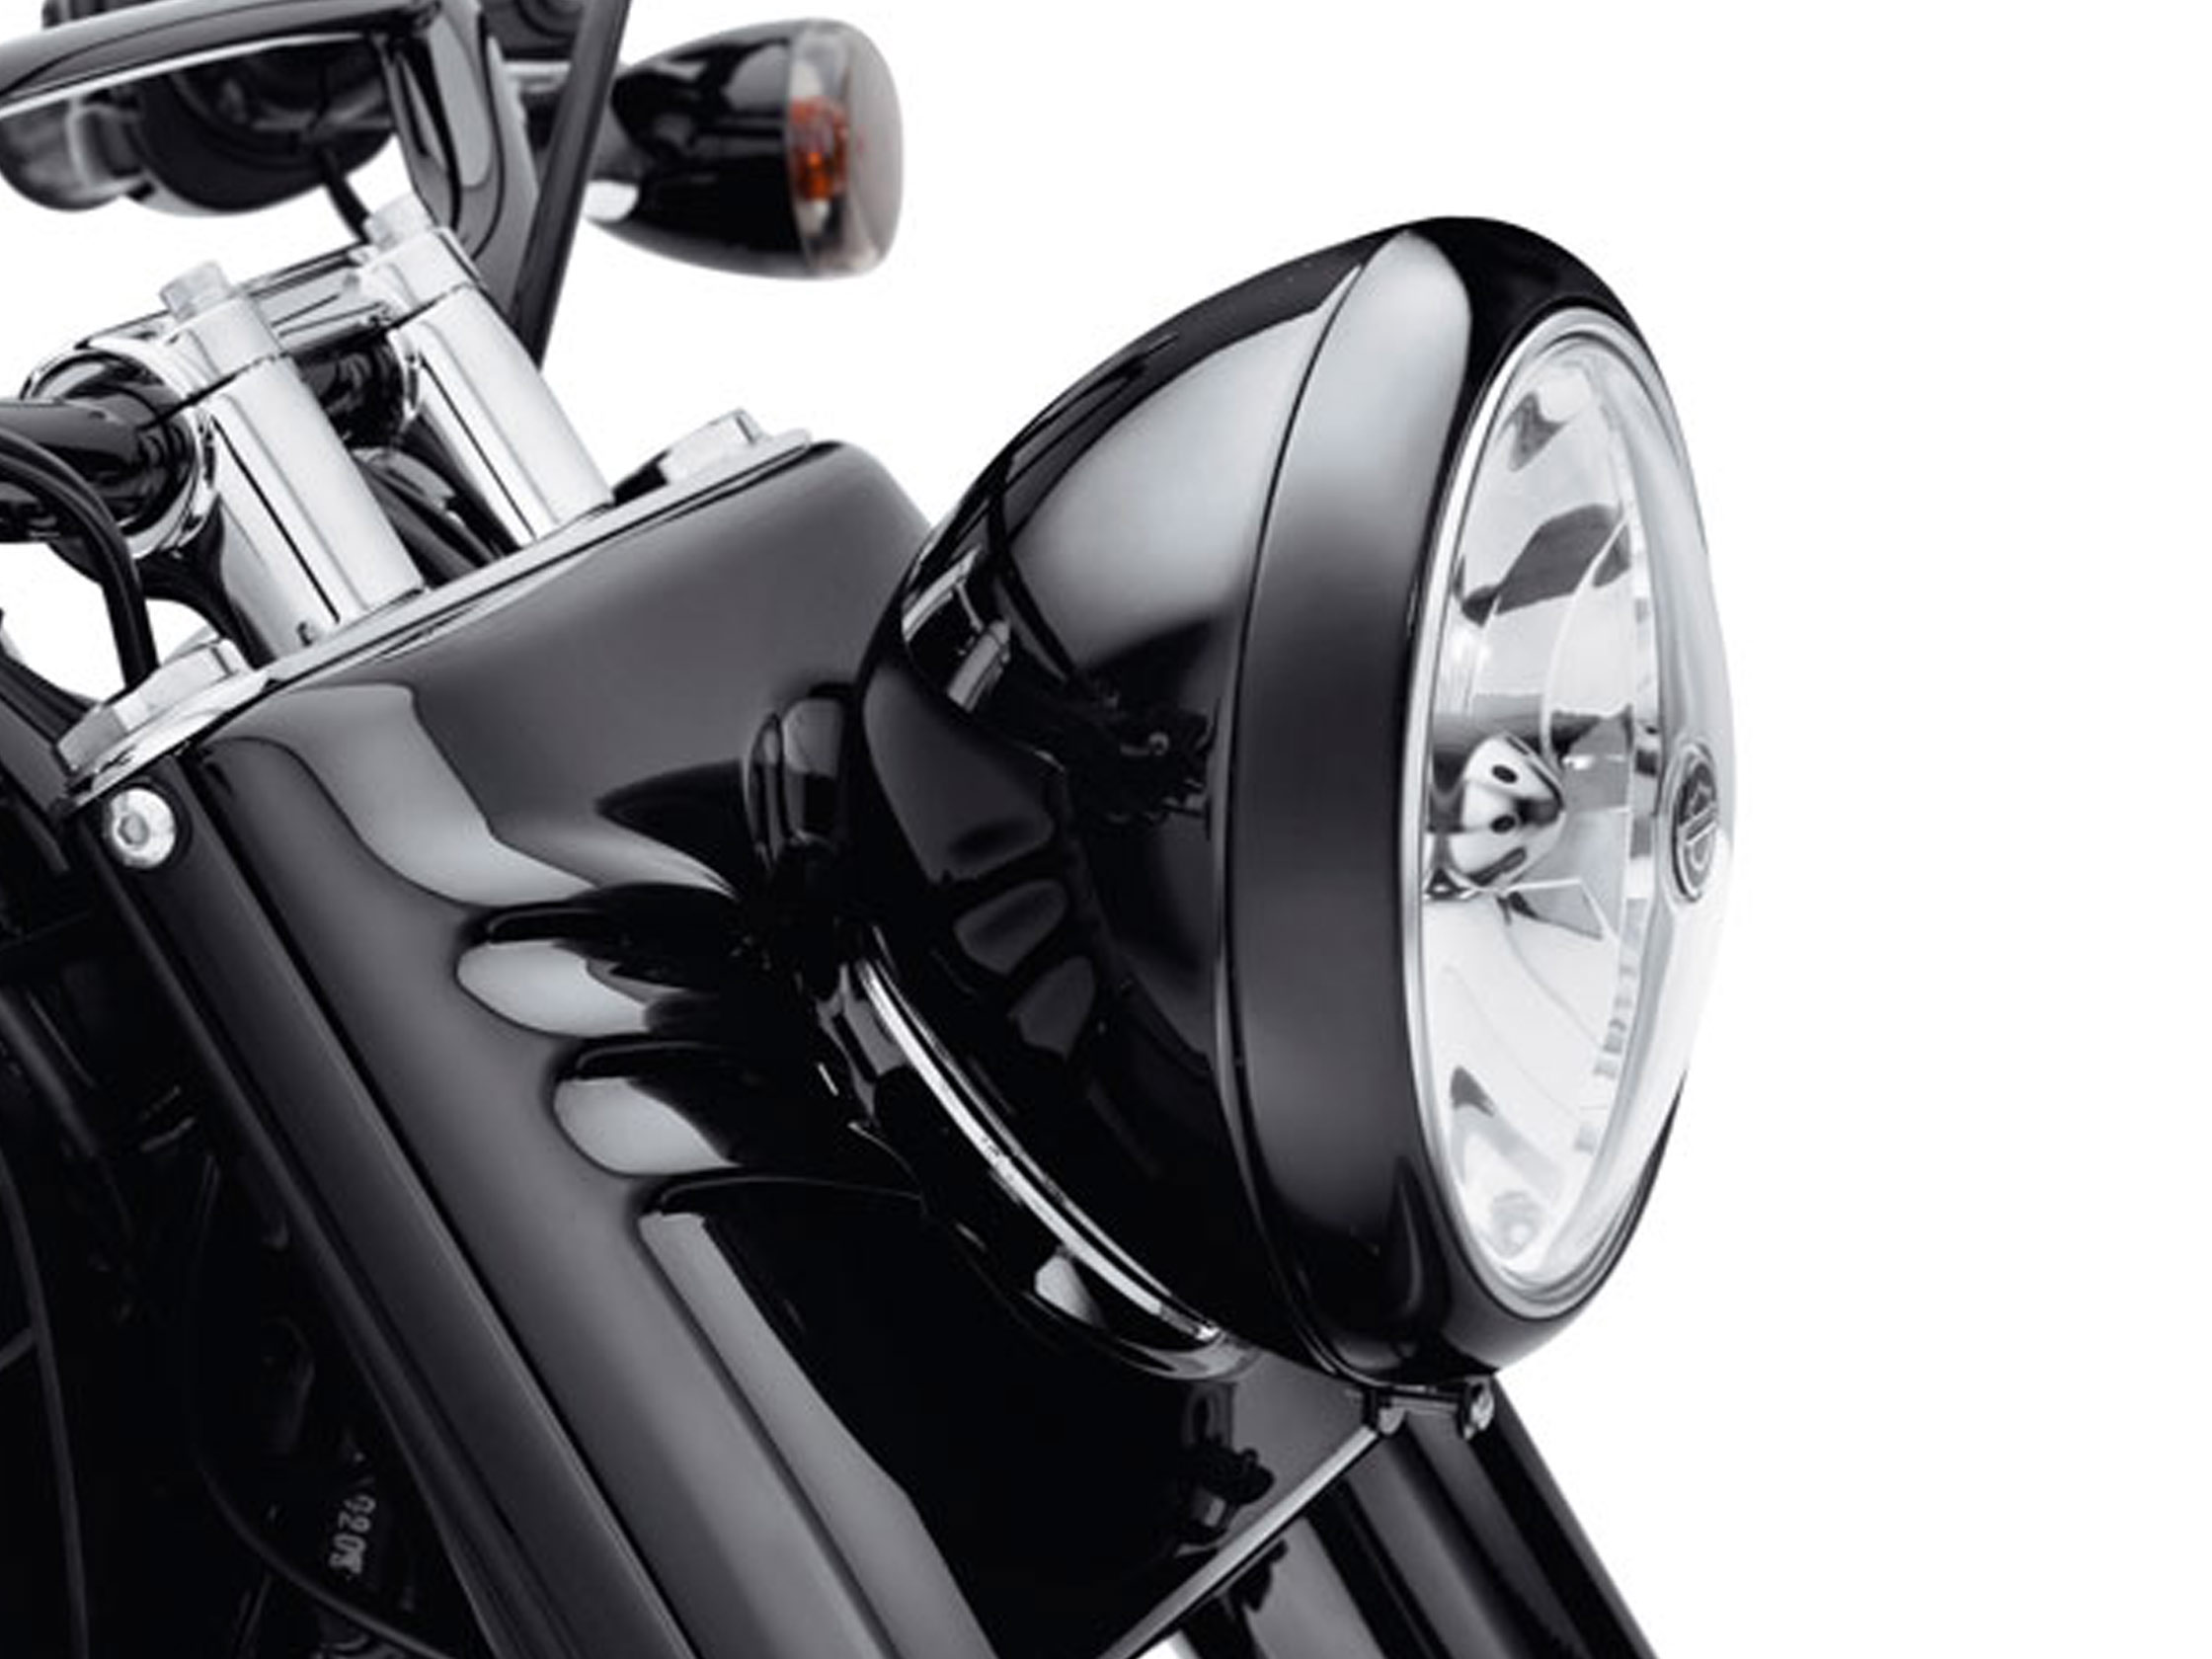 DEFIANCE KOLLEKTION - SCHEINWERFER-ZIERRING 4 Zusatzscheinwerfer - Chrom.  61400353 / Fahrwerkverzierungen / Softail m8 / Teile & Zubehör / -  House-of-Flames Harley-Davidson